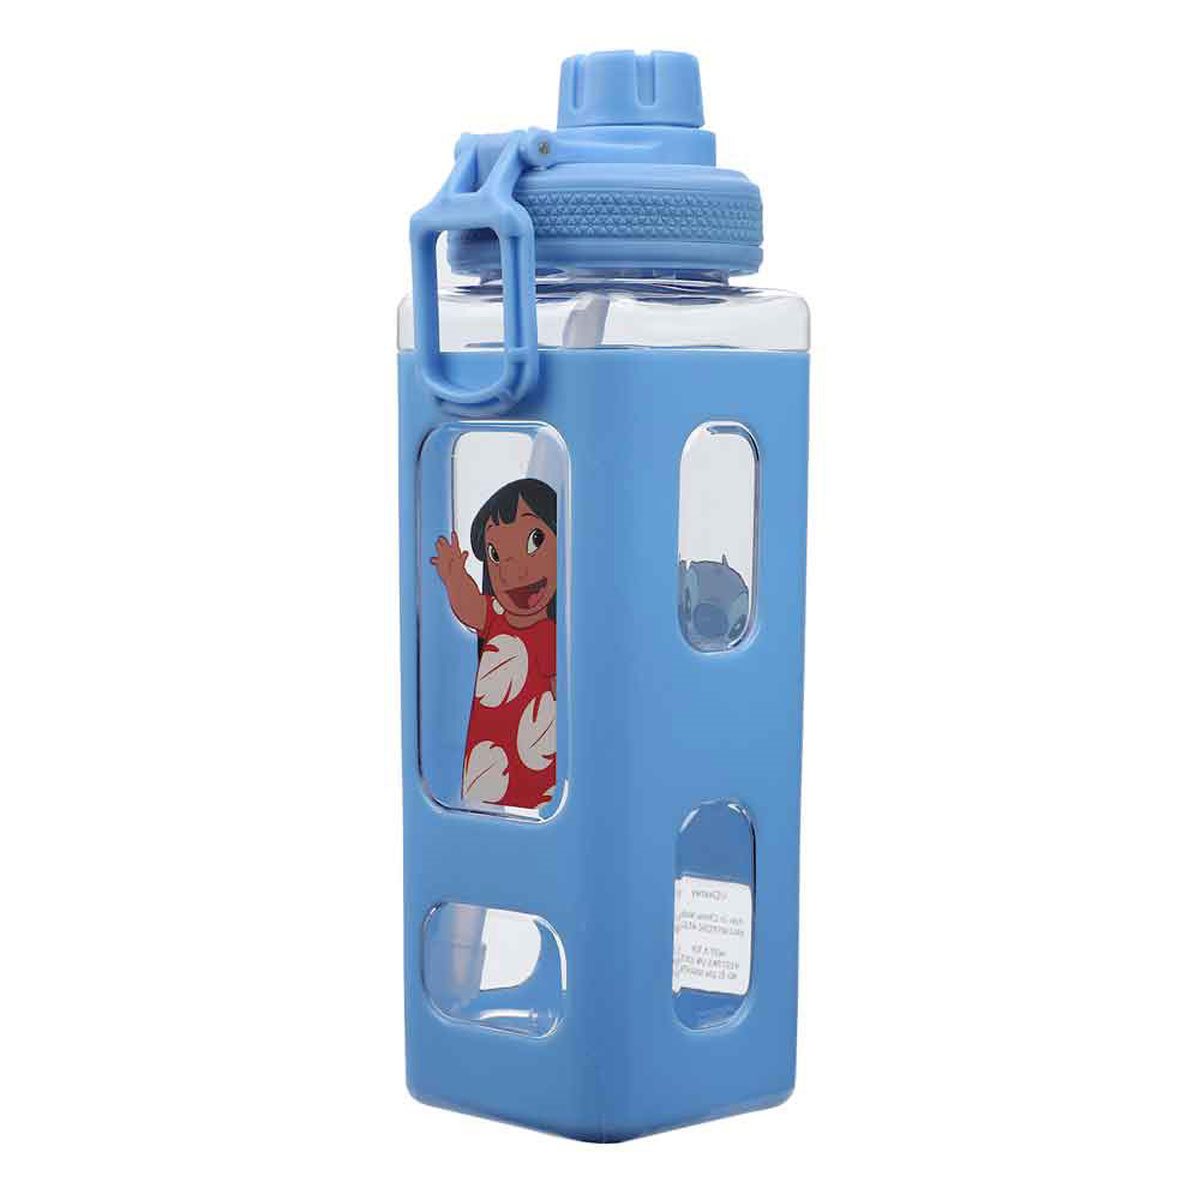 Blue print Batman Kids Water Bottle